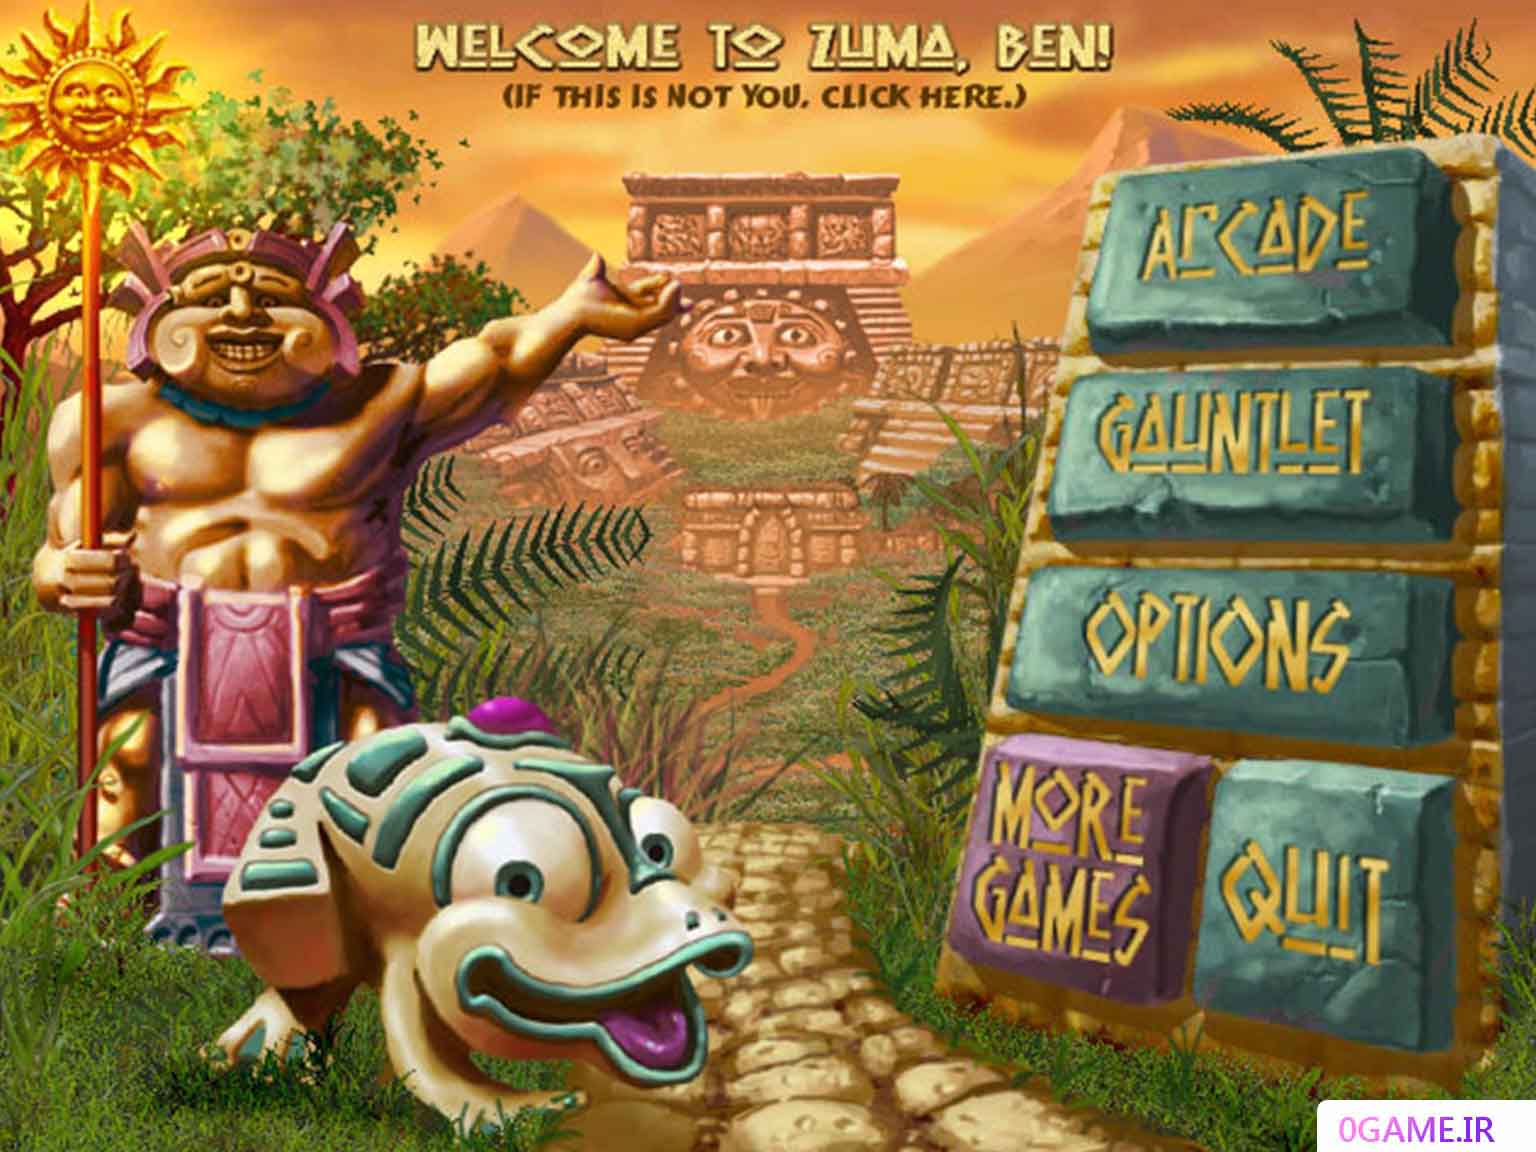 دانلود بازی زوما دلوکس (Zuma Deluxe) نسخه کامل برای کامپیوتر